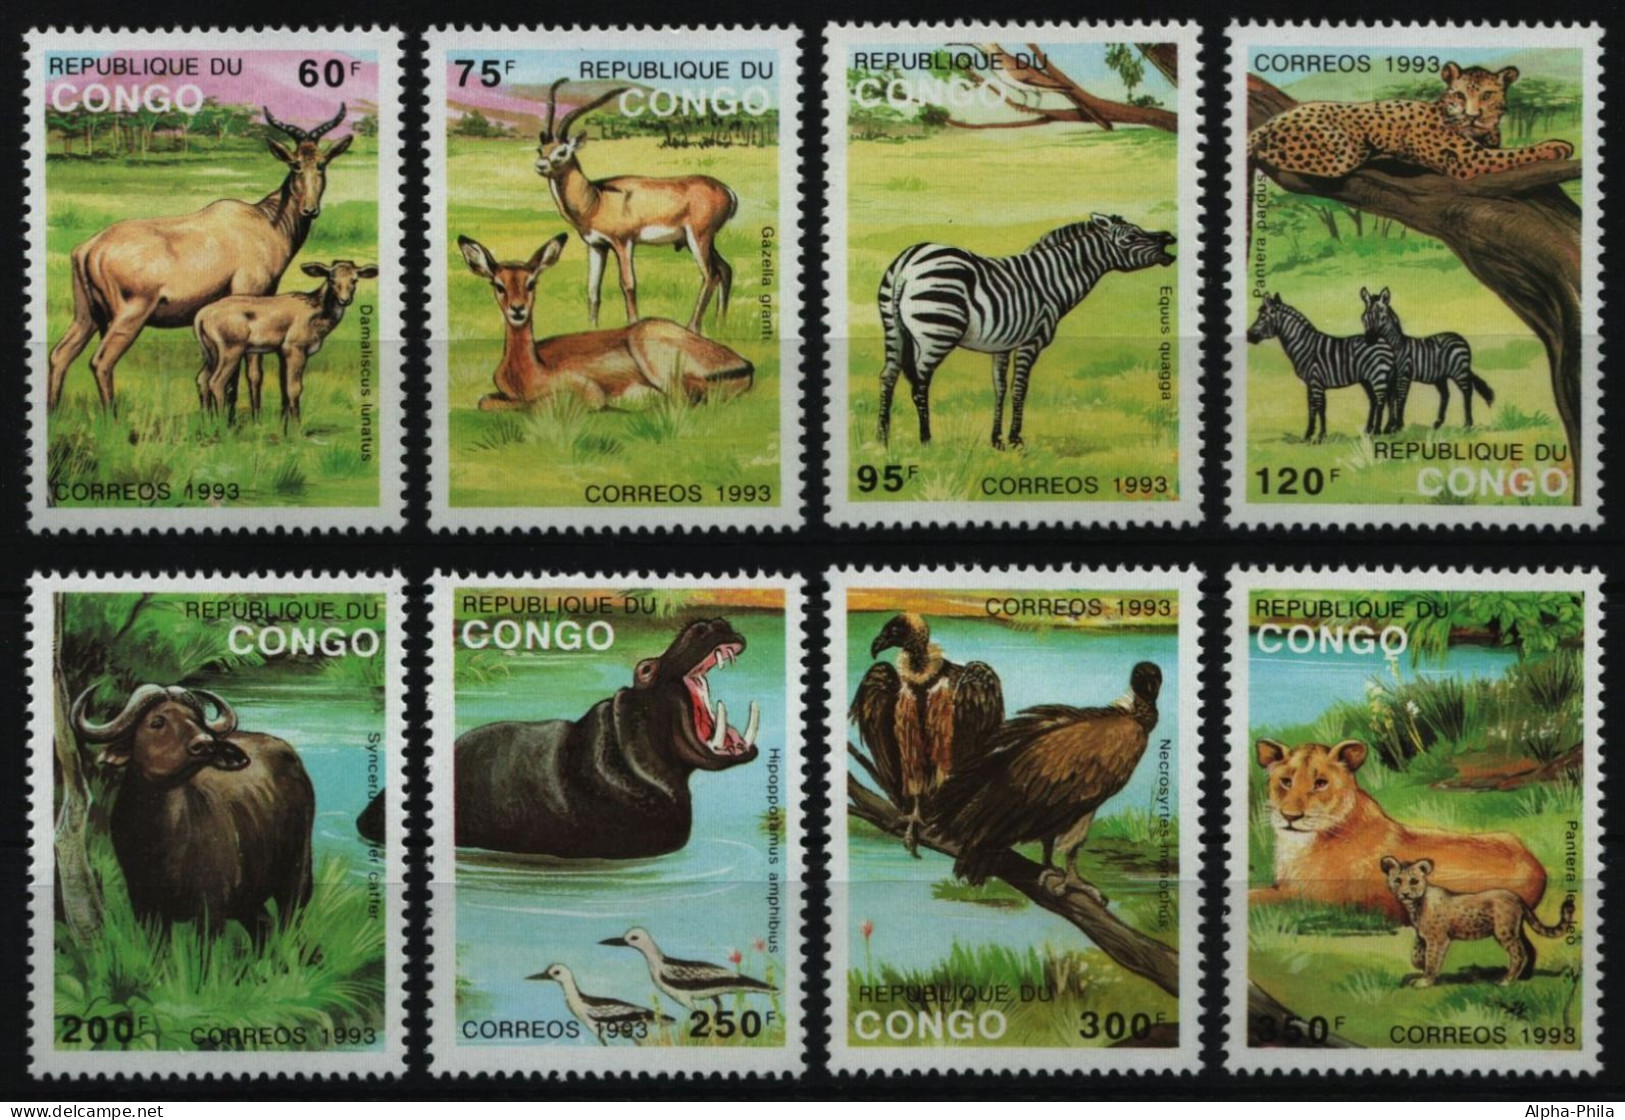 Kongo-Brazzaville 1993 - Mi-Nr. 1363-1370 I ** - MNH - Wildtiere / Wild Animals - Neufs